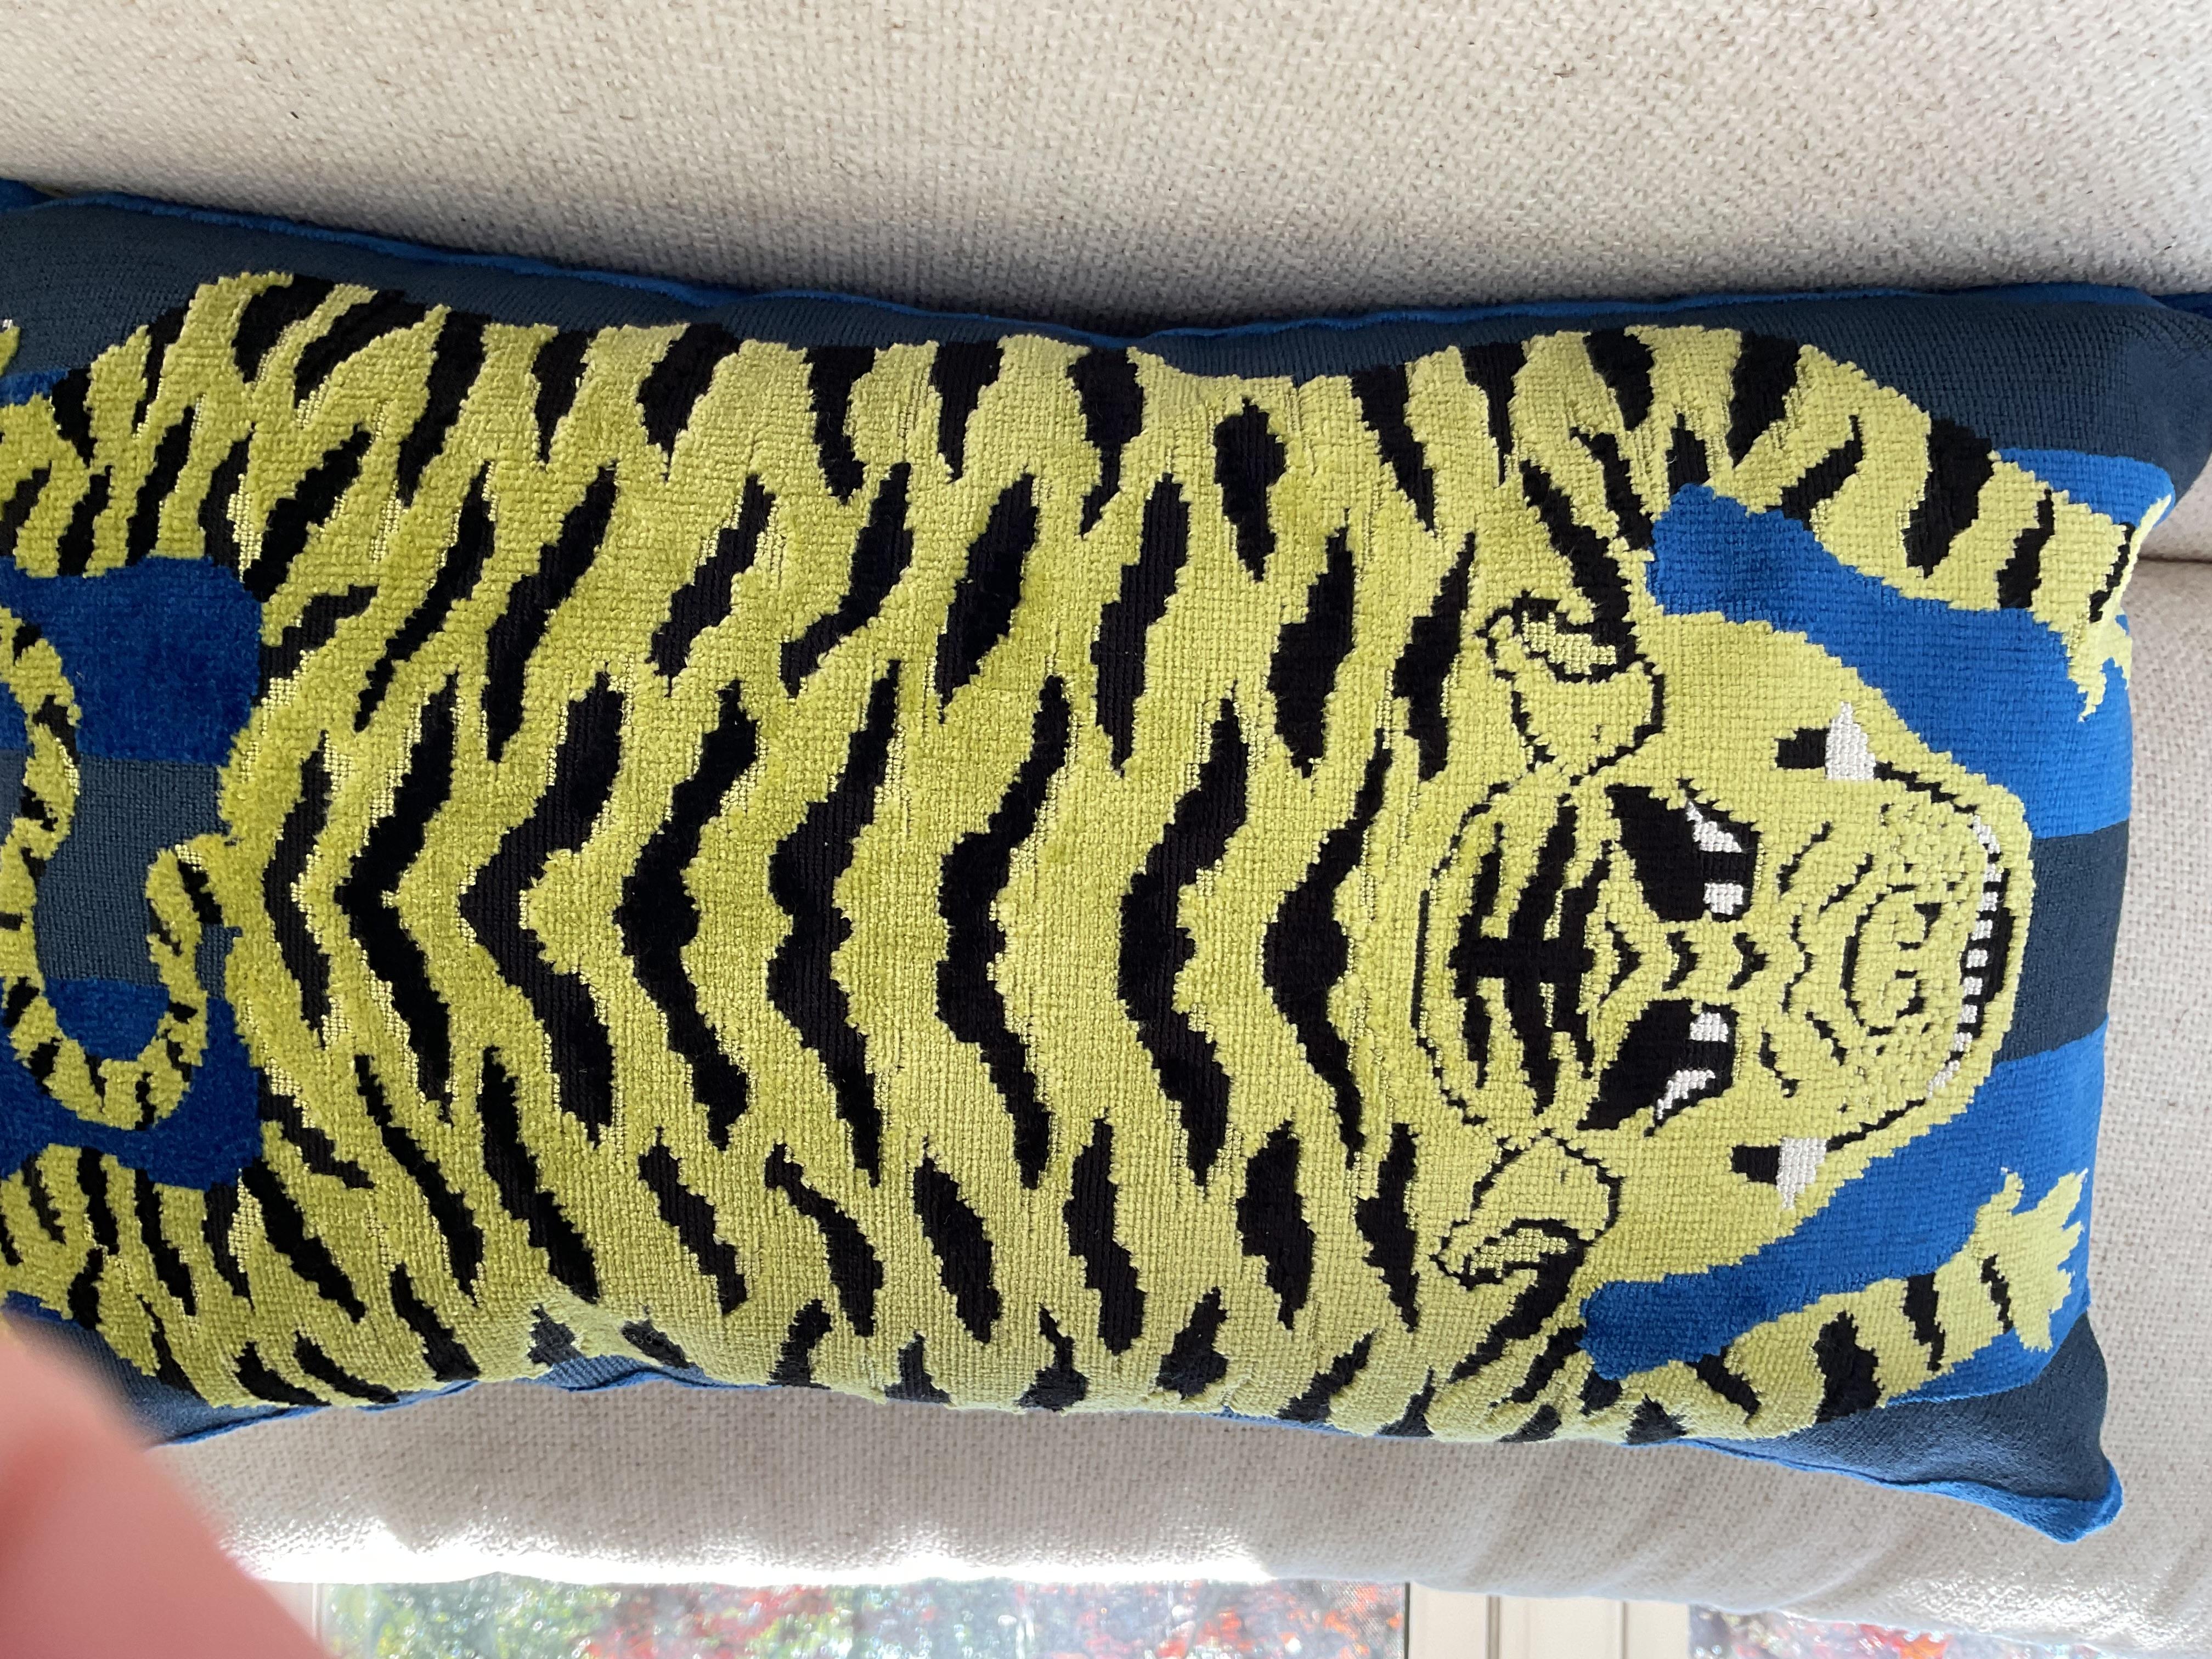 Jokhang Tiger en bleu, de Johnson Hartig pour Fabrice, recompose le motif du tigre tibétain en une bande multidimensionnelle sur un luxueux tissu de velours qui se glisse facilement dans un éventail d'aménagements, de l'élégant à l'éclectique et